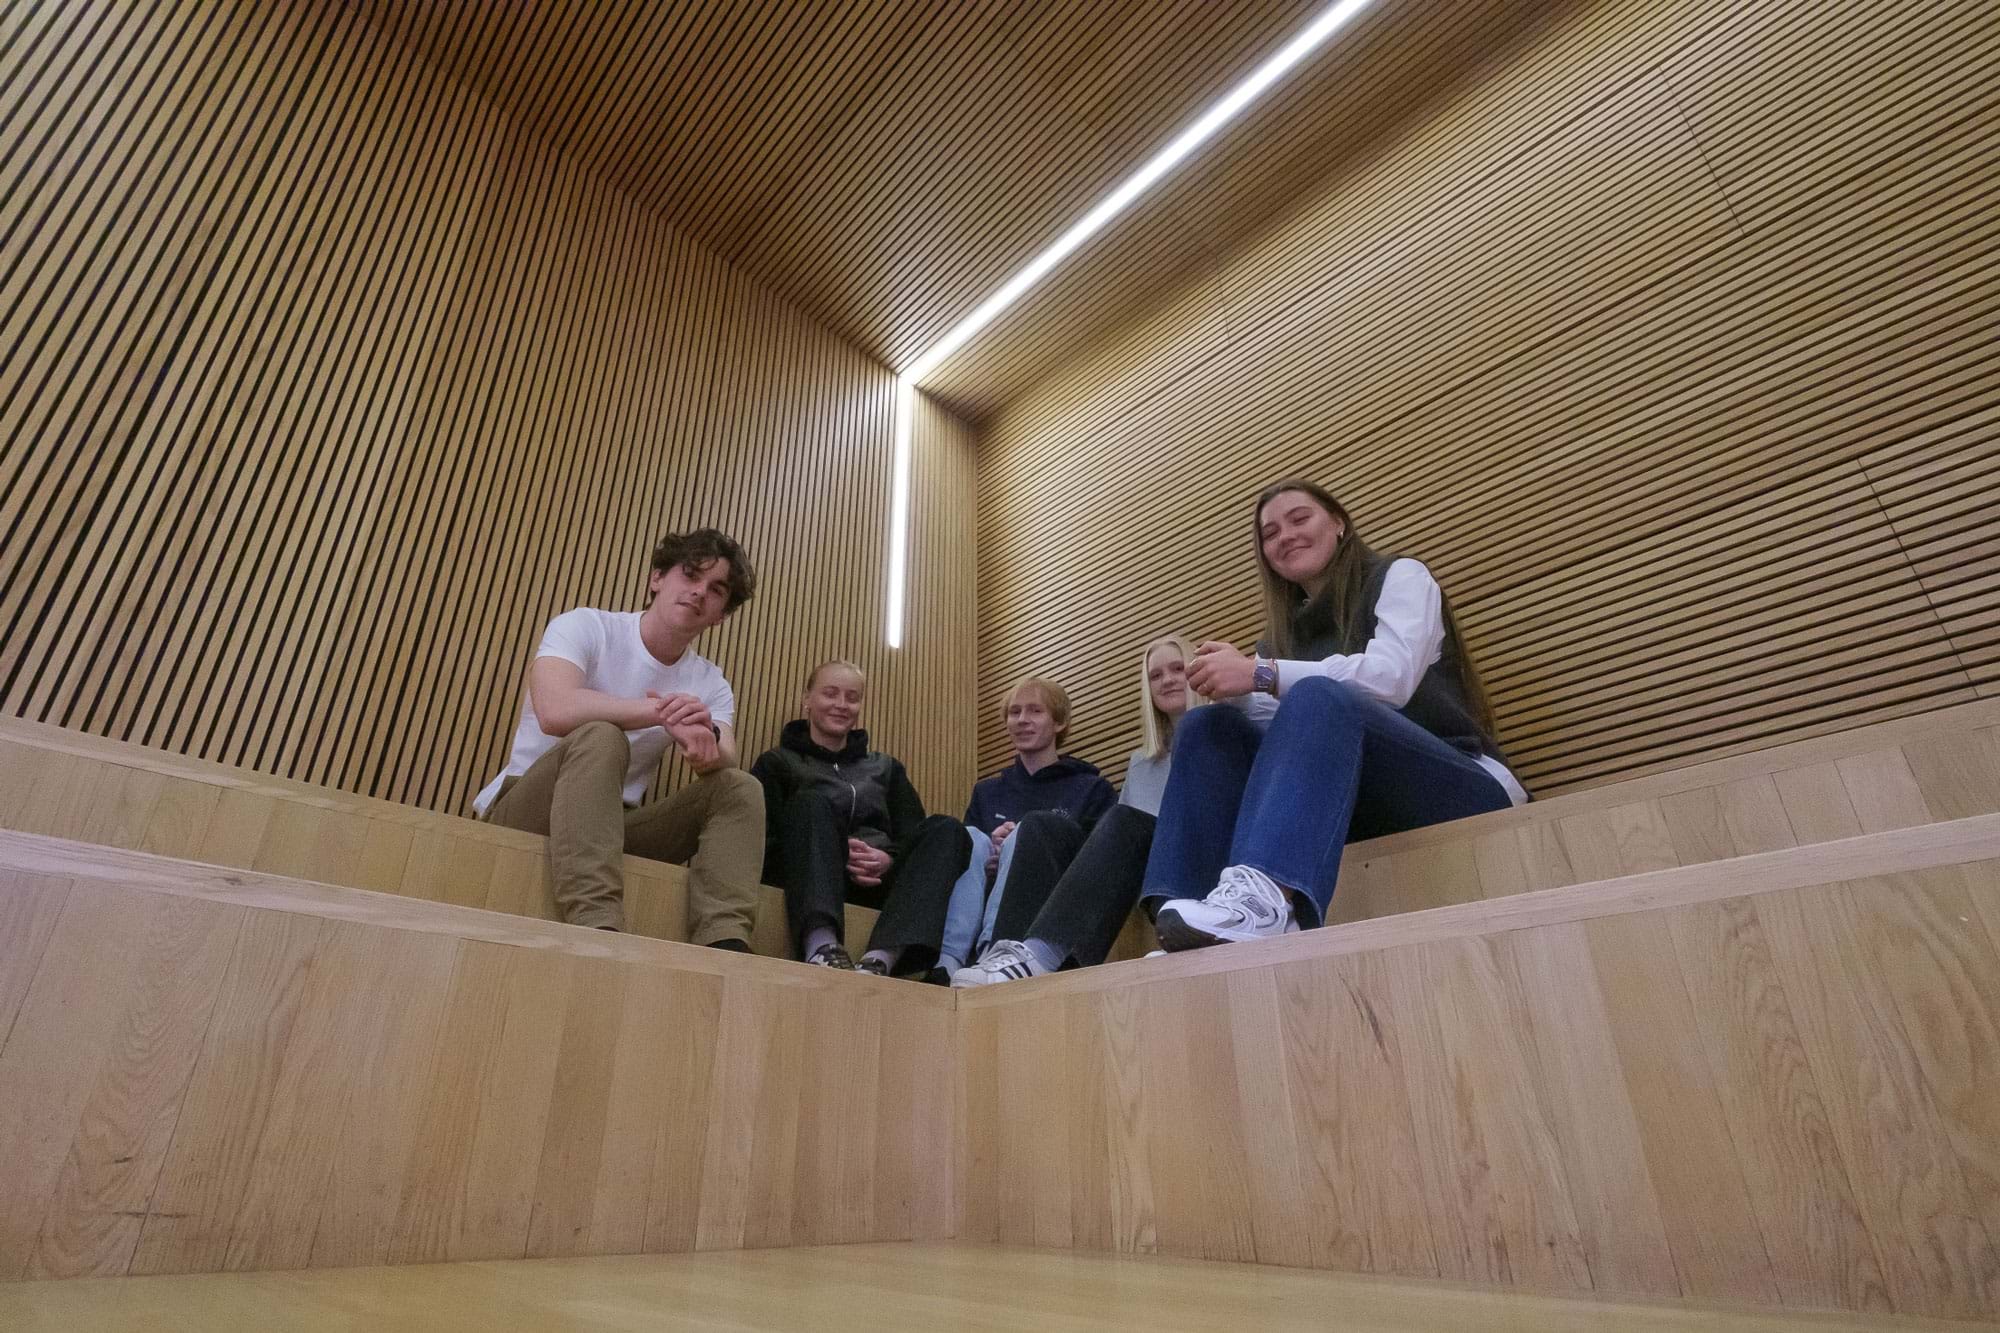 Fem elever sidder på indendørs trætrappe